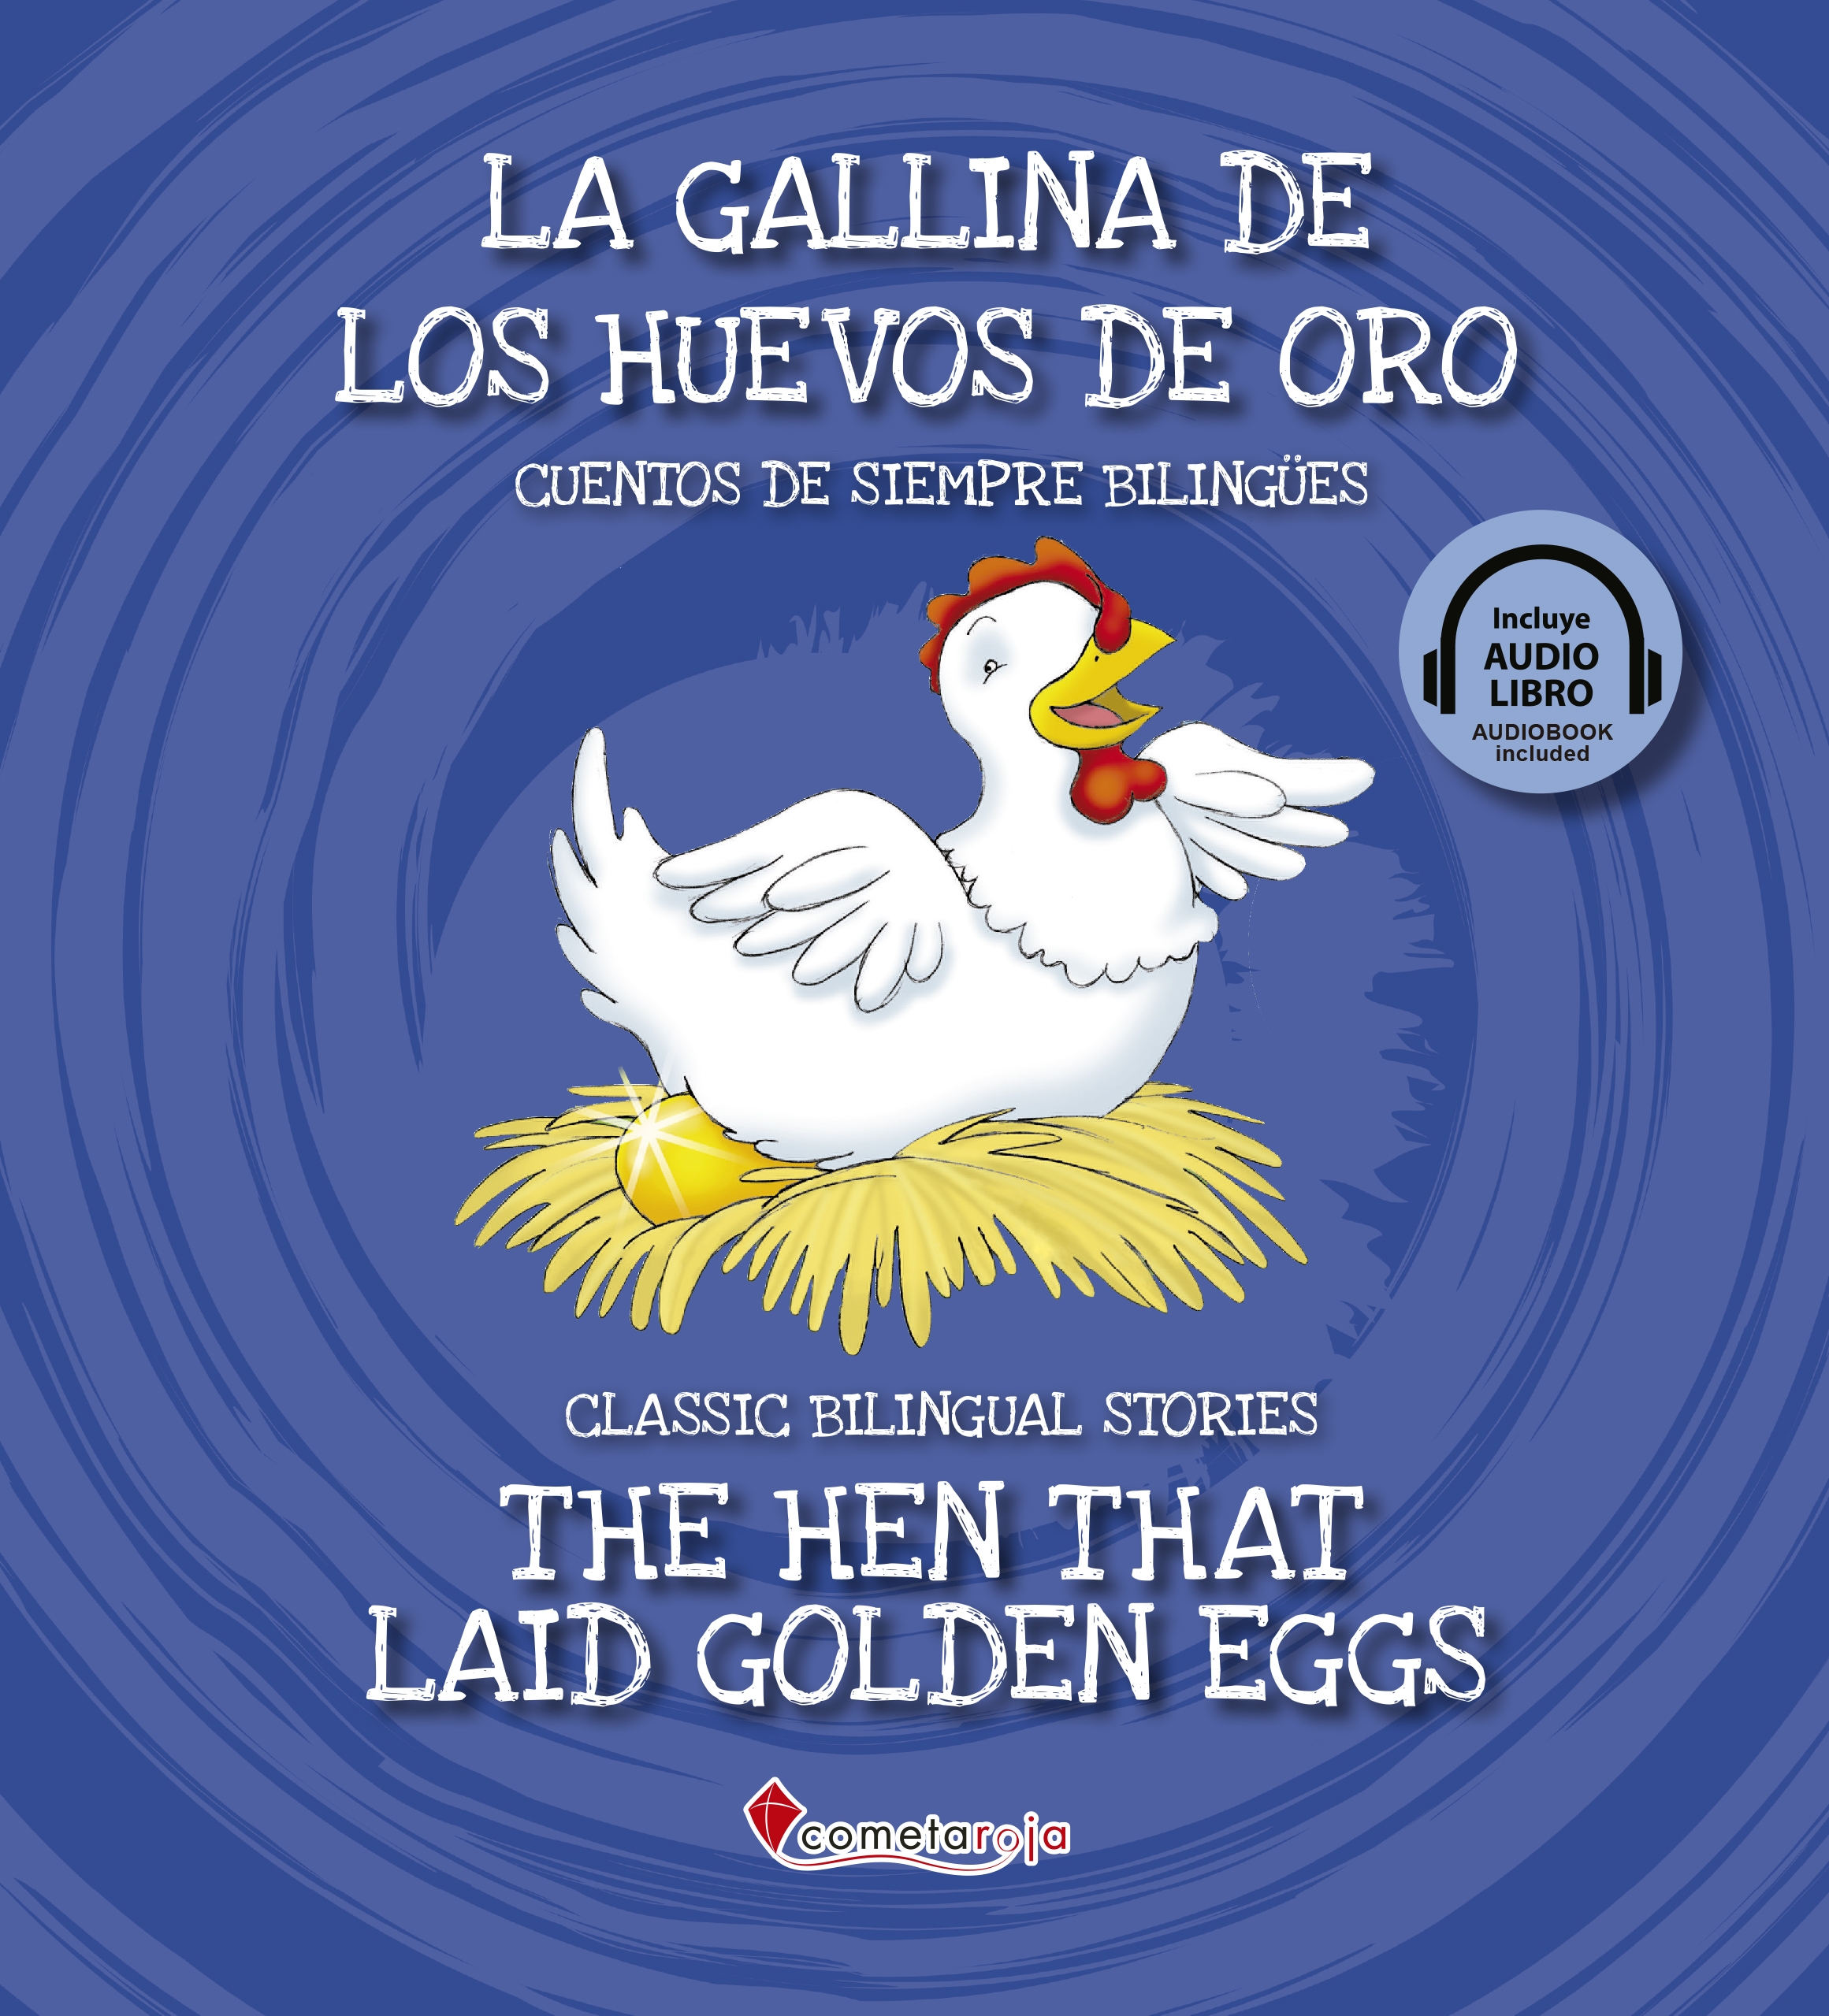 La gallina de los huevos de oro / The hen that laid golden eggs